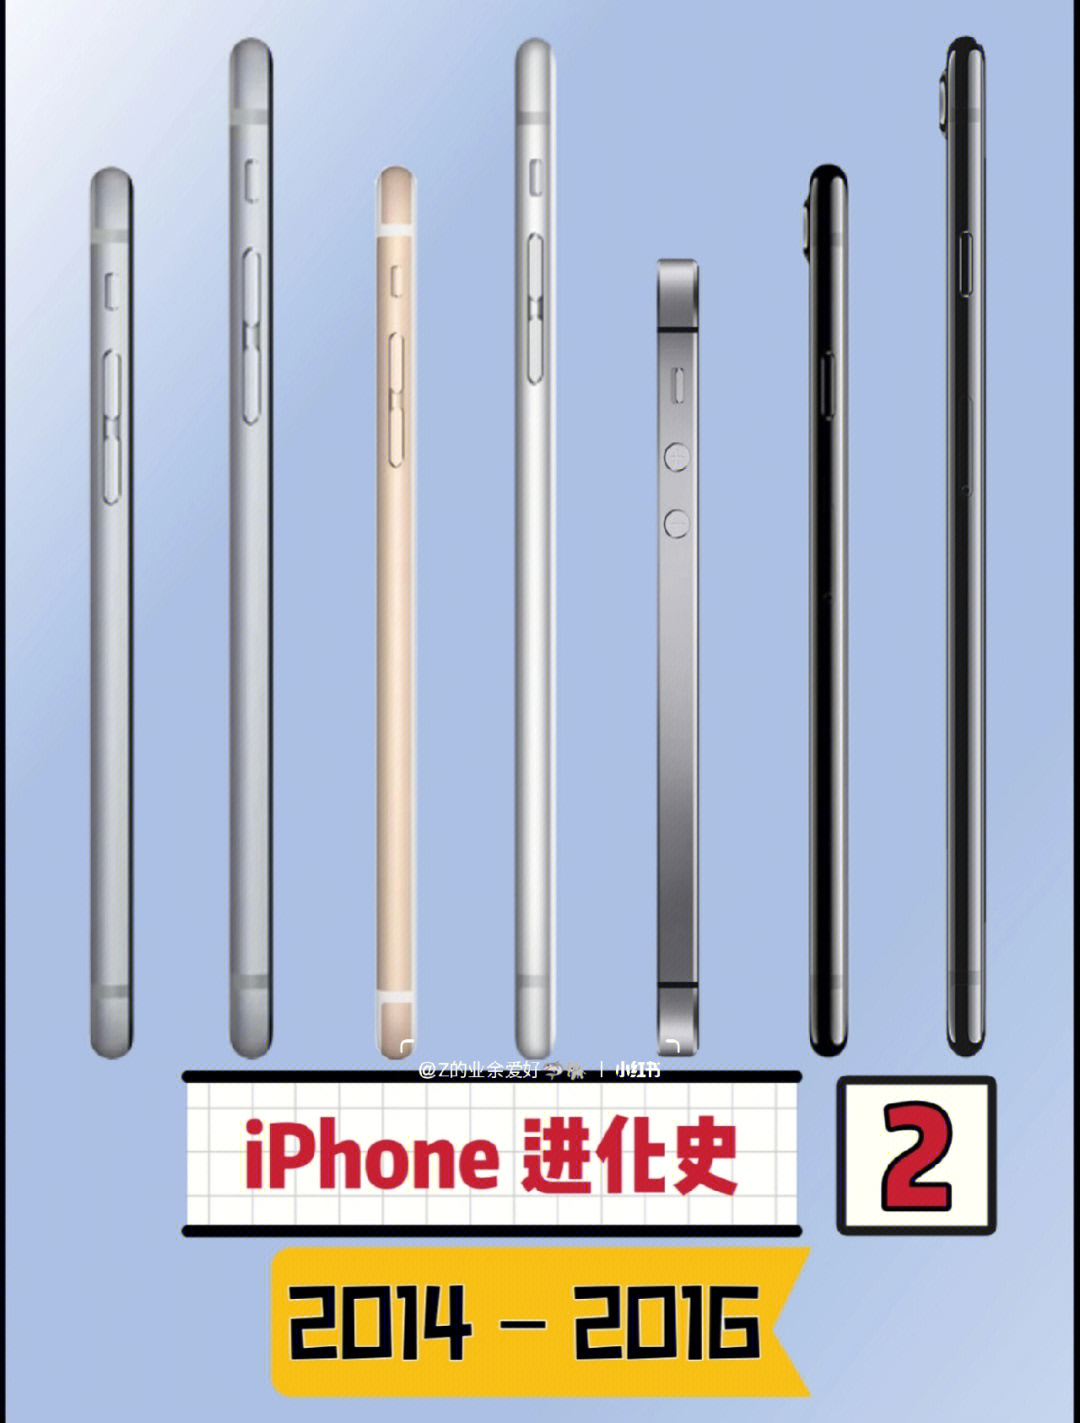 苹果6s和苹果6的区别_苹果6s和6s的区别_苹果4s和6s耳机区别